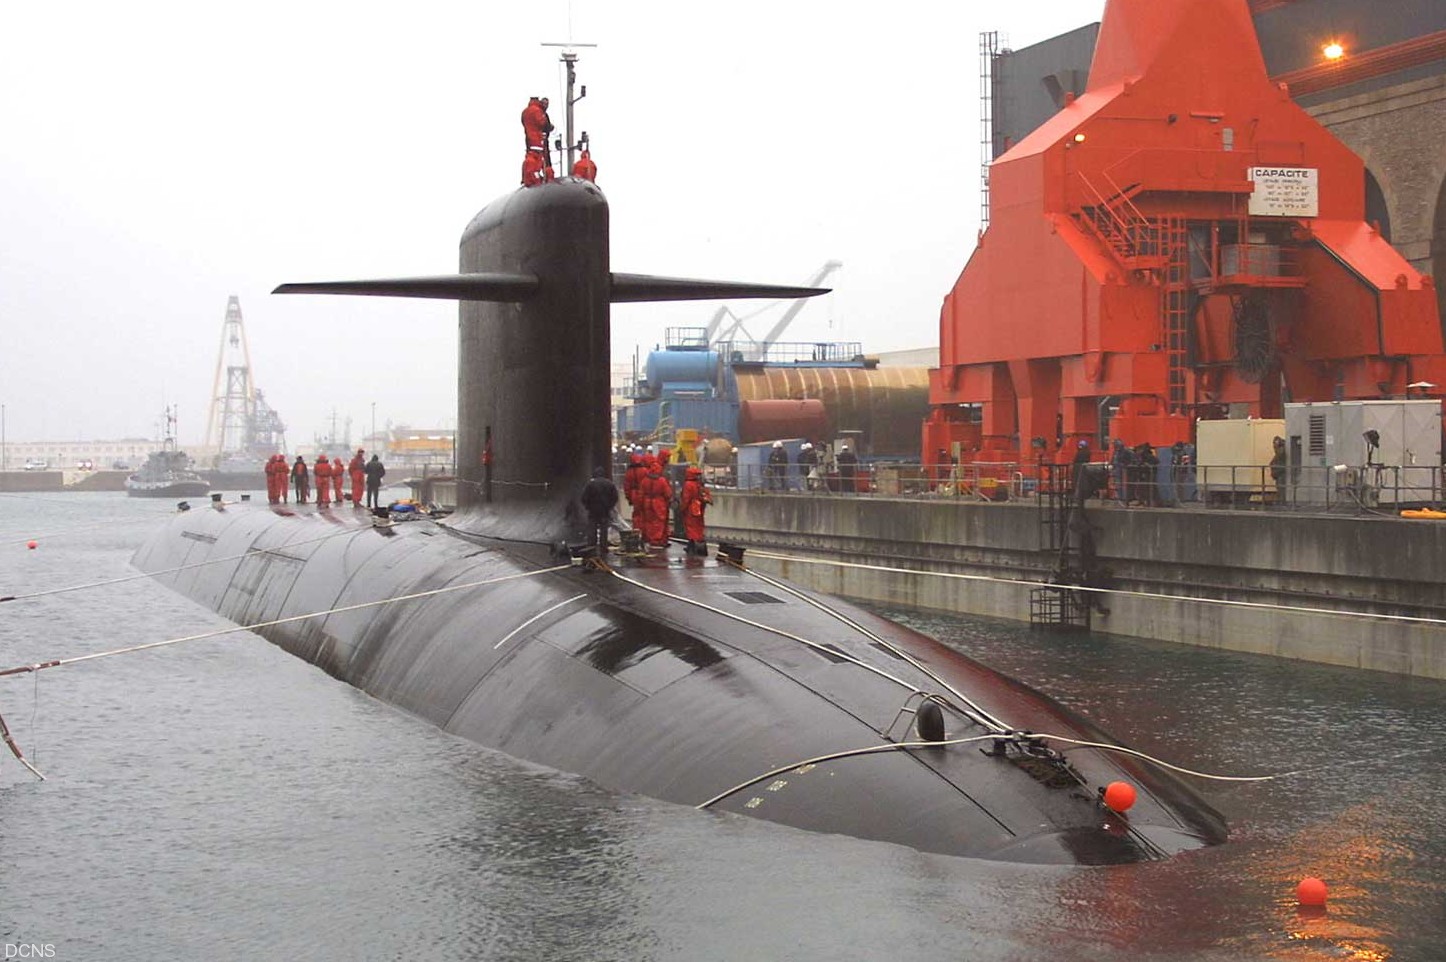 “凯旋”级核潜艇具有很强的战略打击能力。